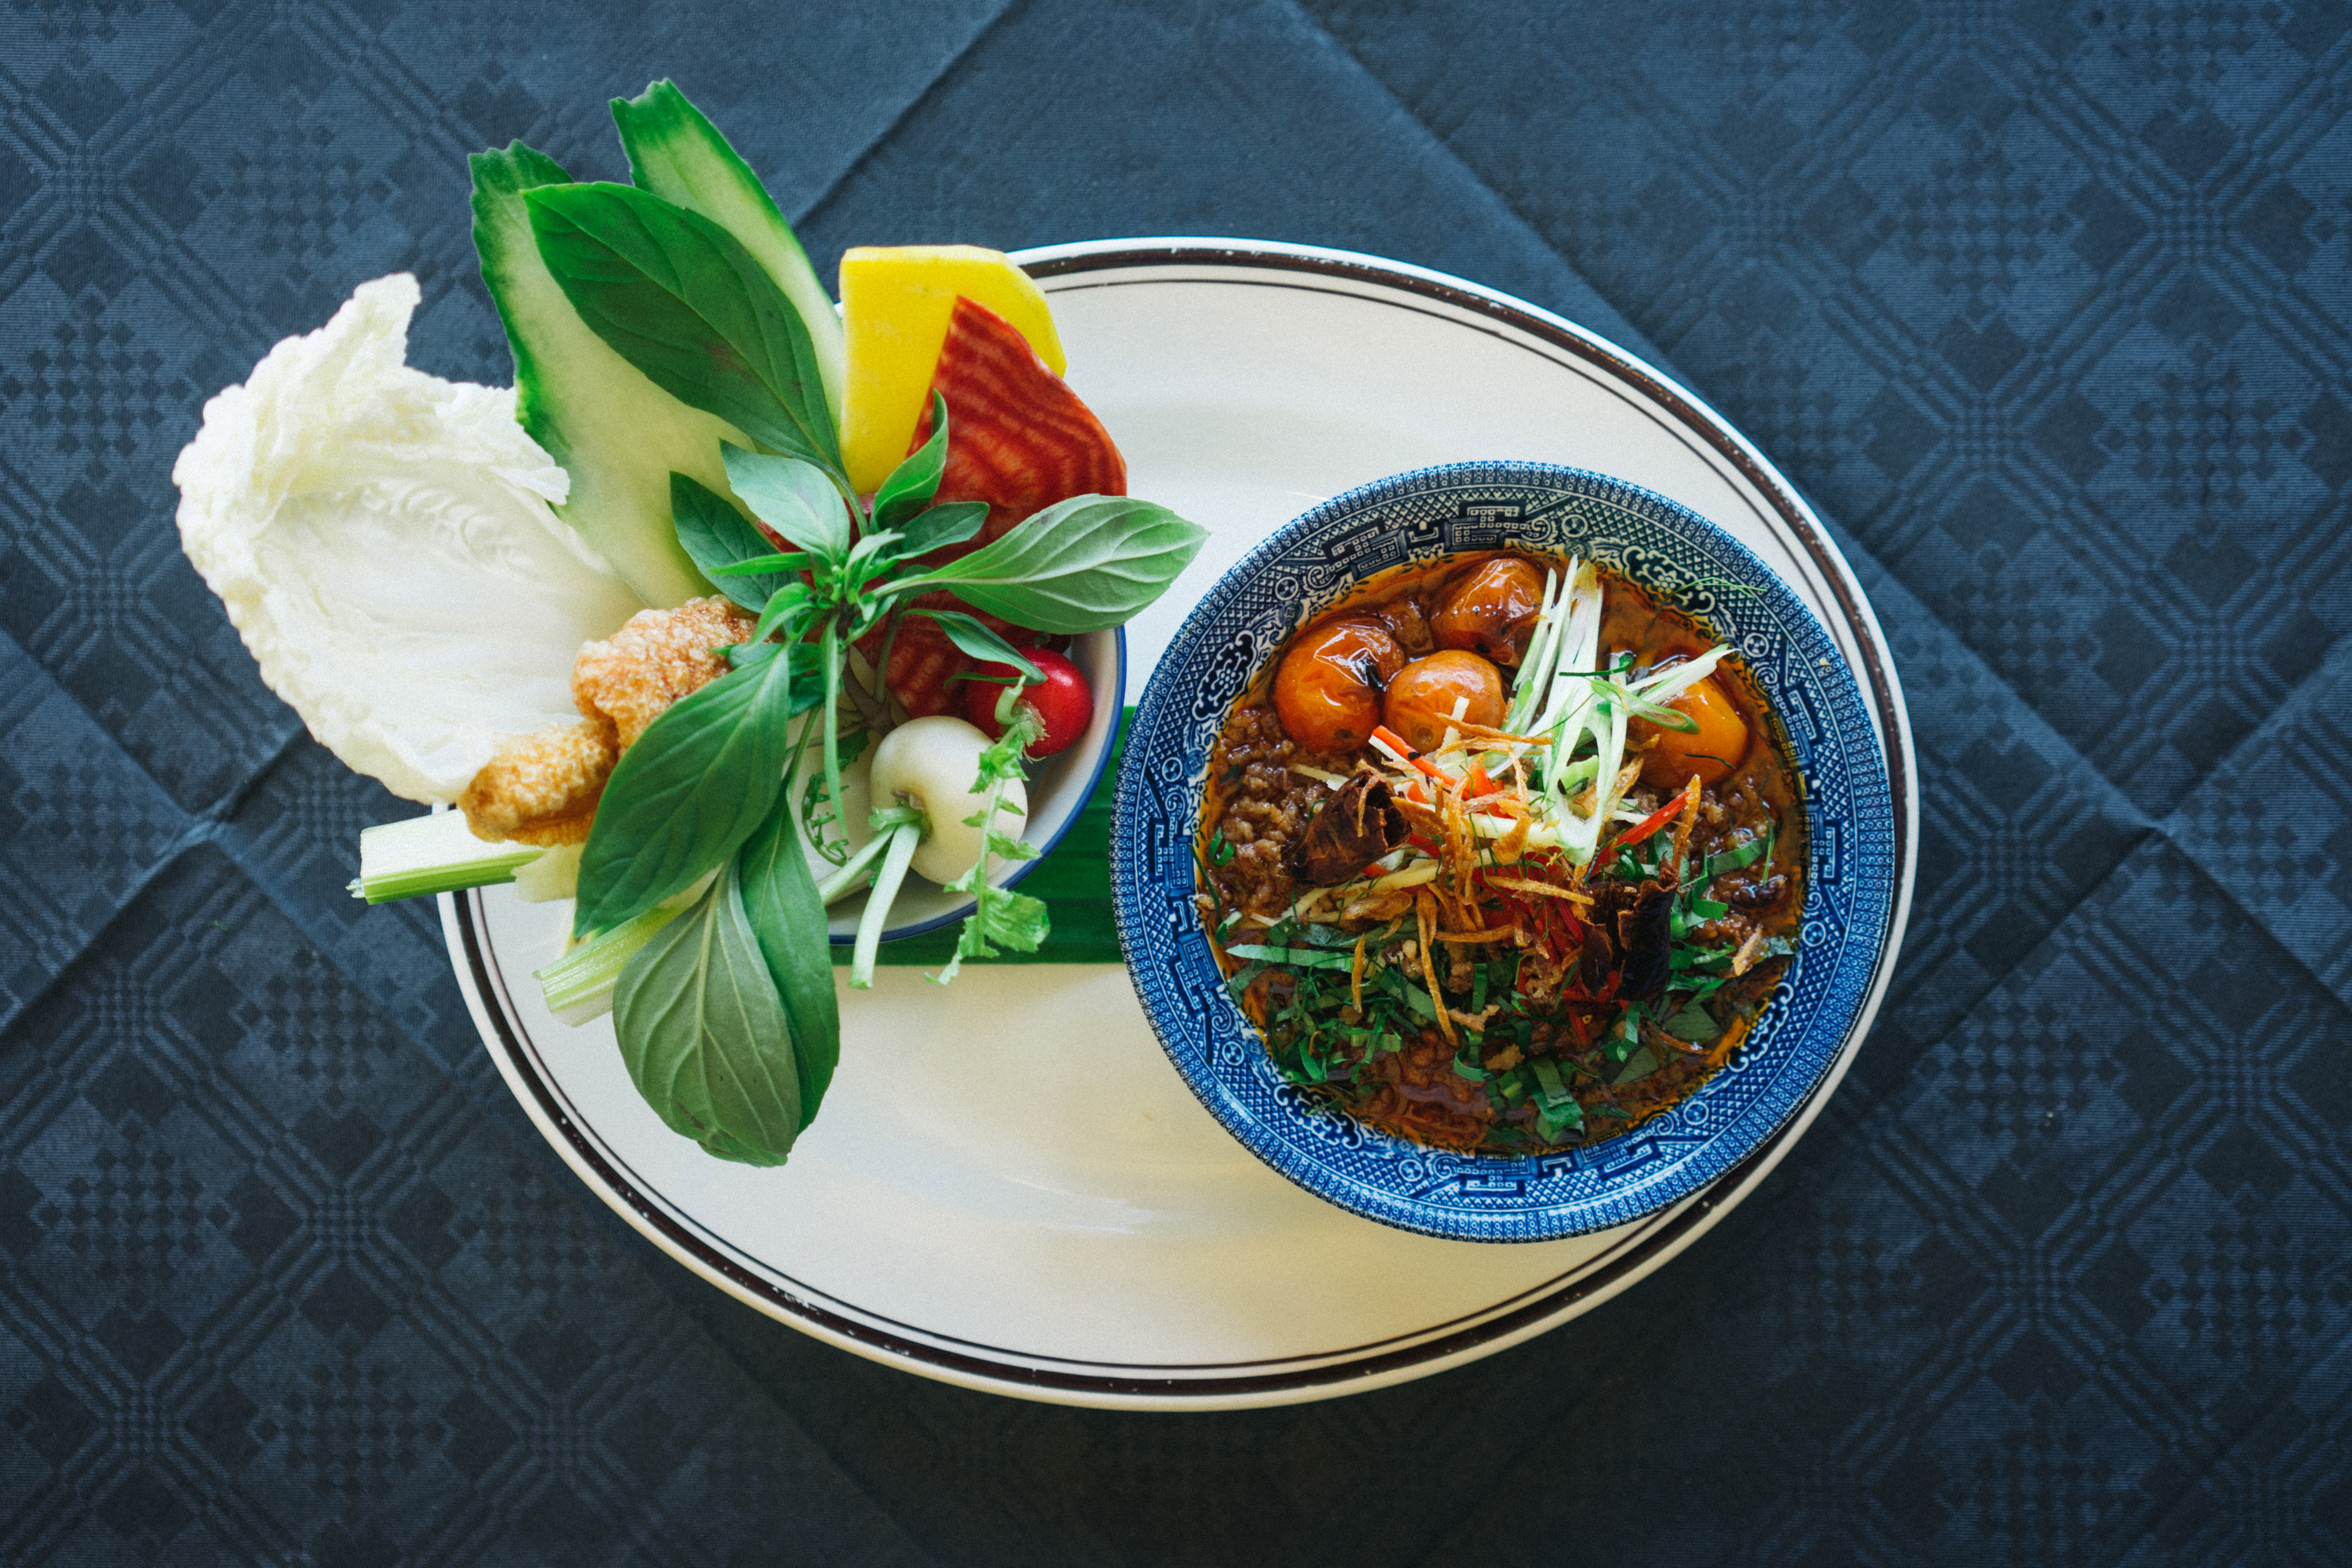 Thai-inspired curries at Farang